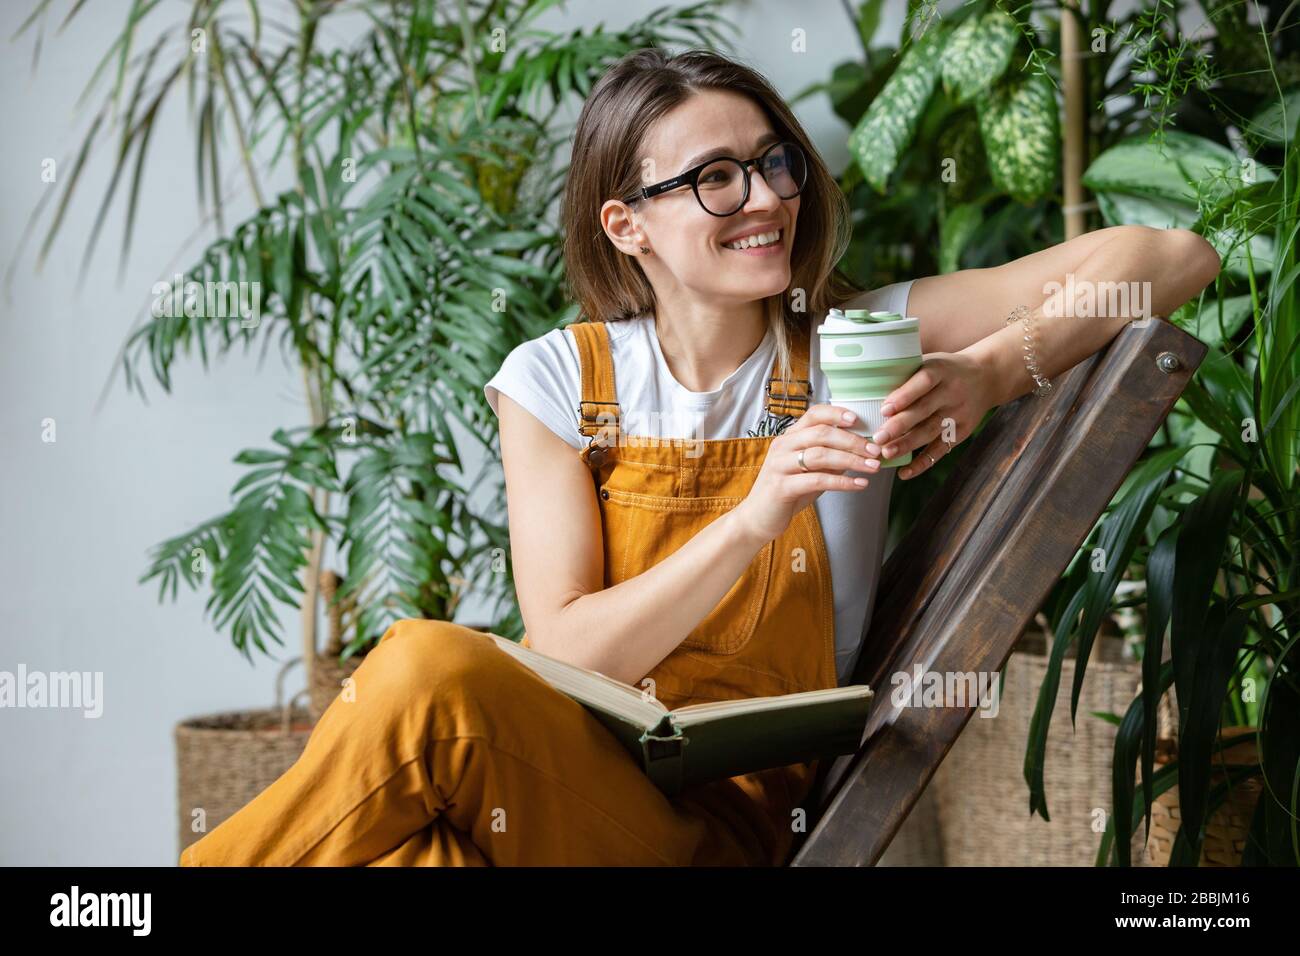 Weibliche europäische Gärtnerin, die Overalls trägt, nach der Arbeit ruht, auf Holzstuhl im heimischen Gewächshaus sitzt, wiederverwendbaren Kaffee-/Teebecher beiseite hält Stockfoto